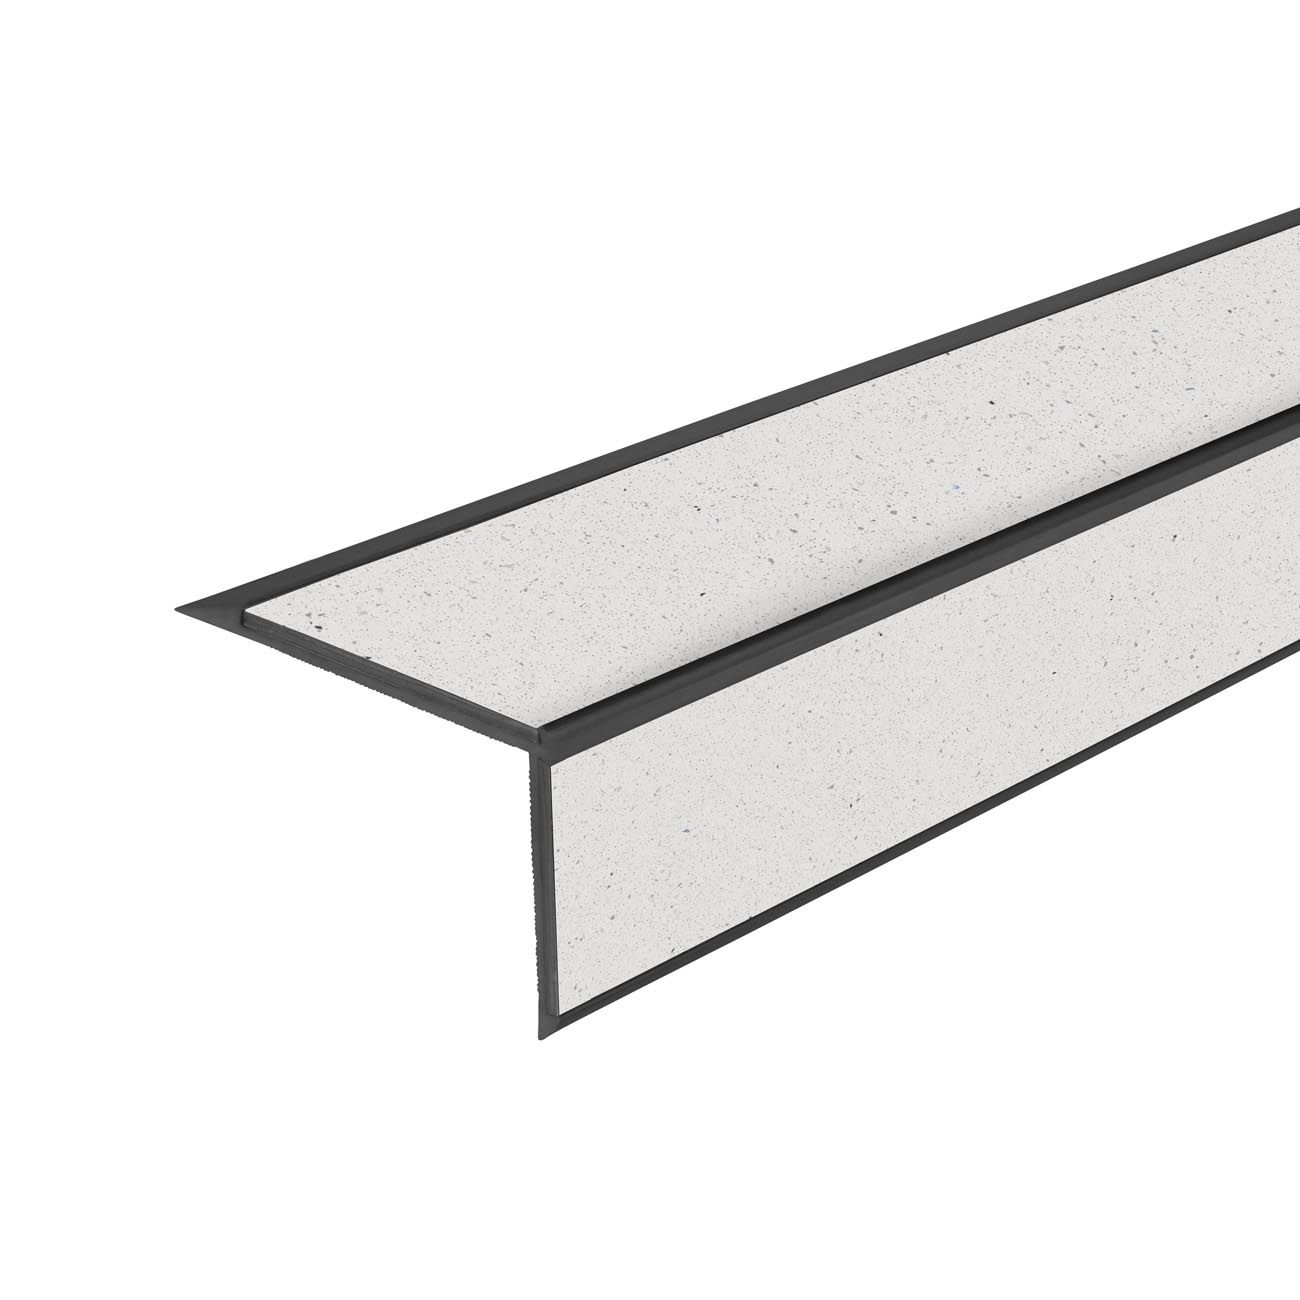 Peldaño de Escalera Antideslizante - Perfiles de aluminio